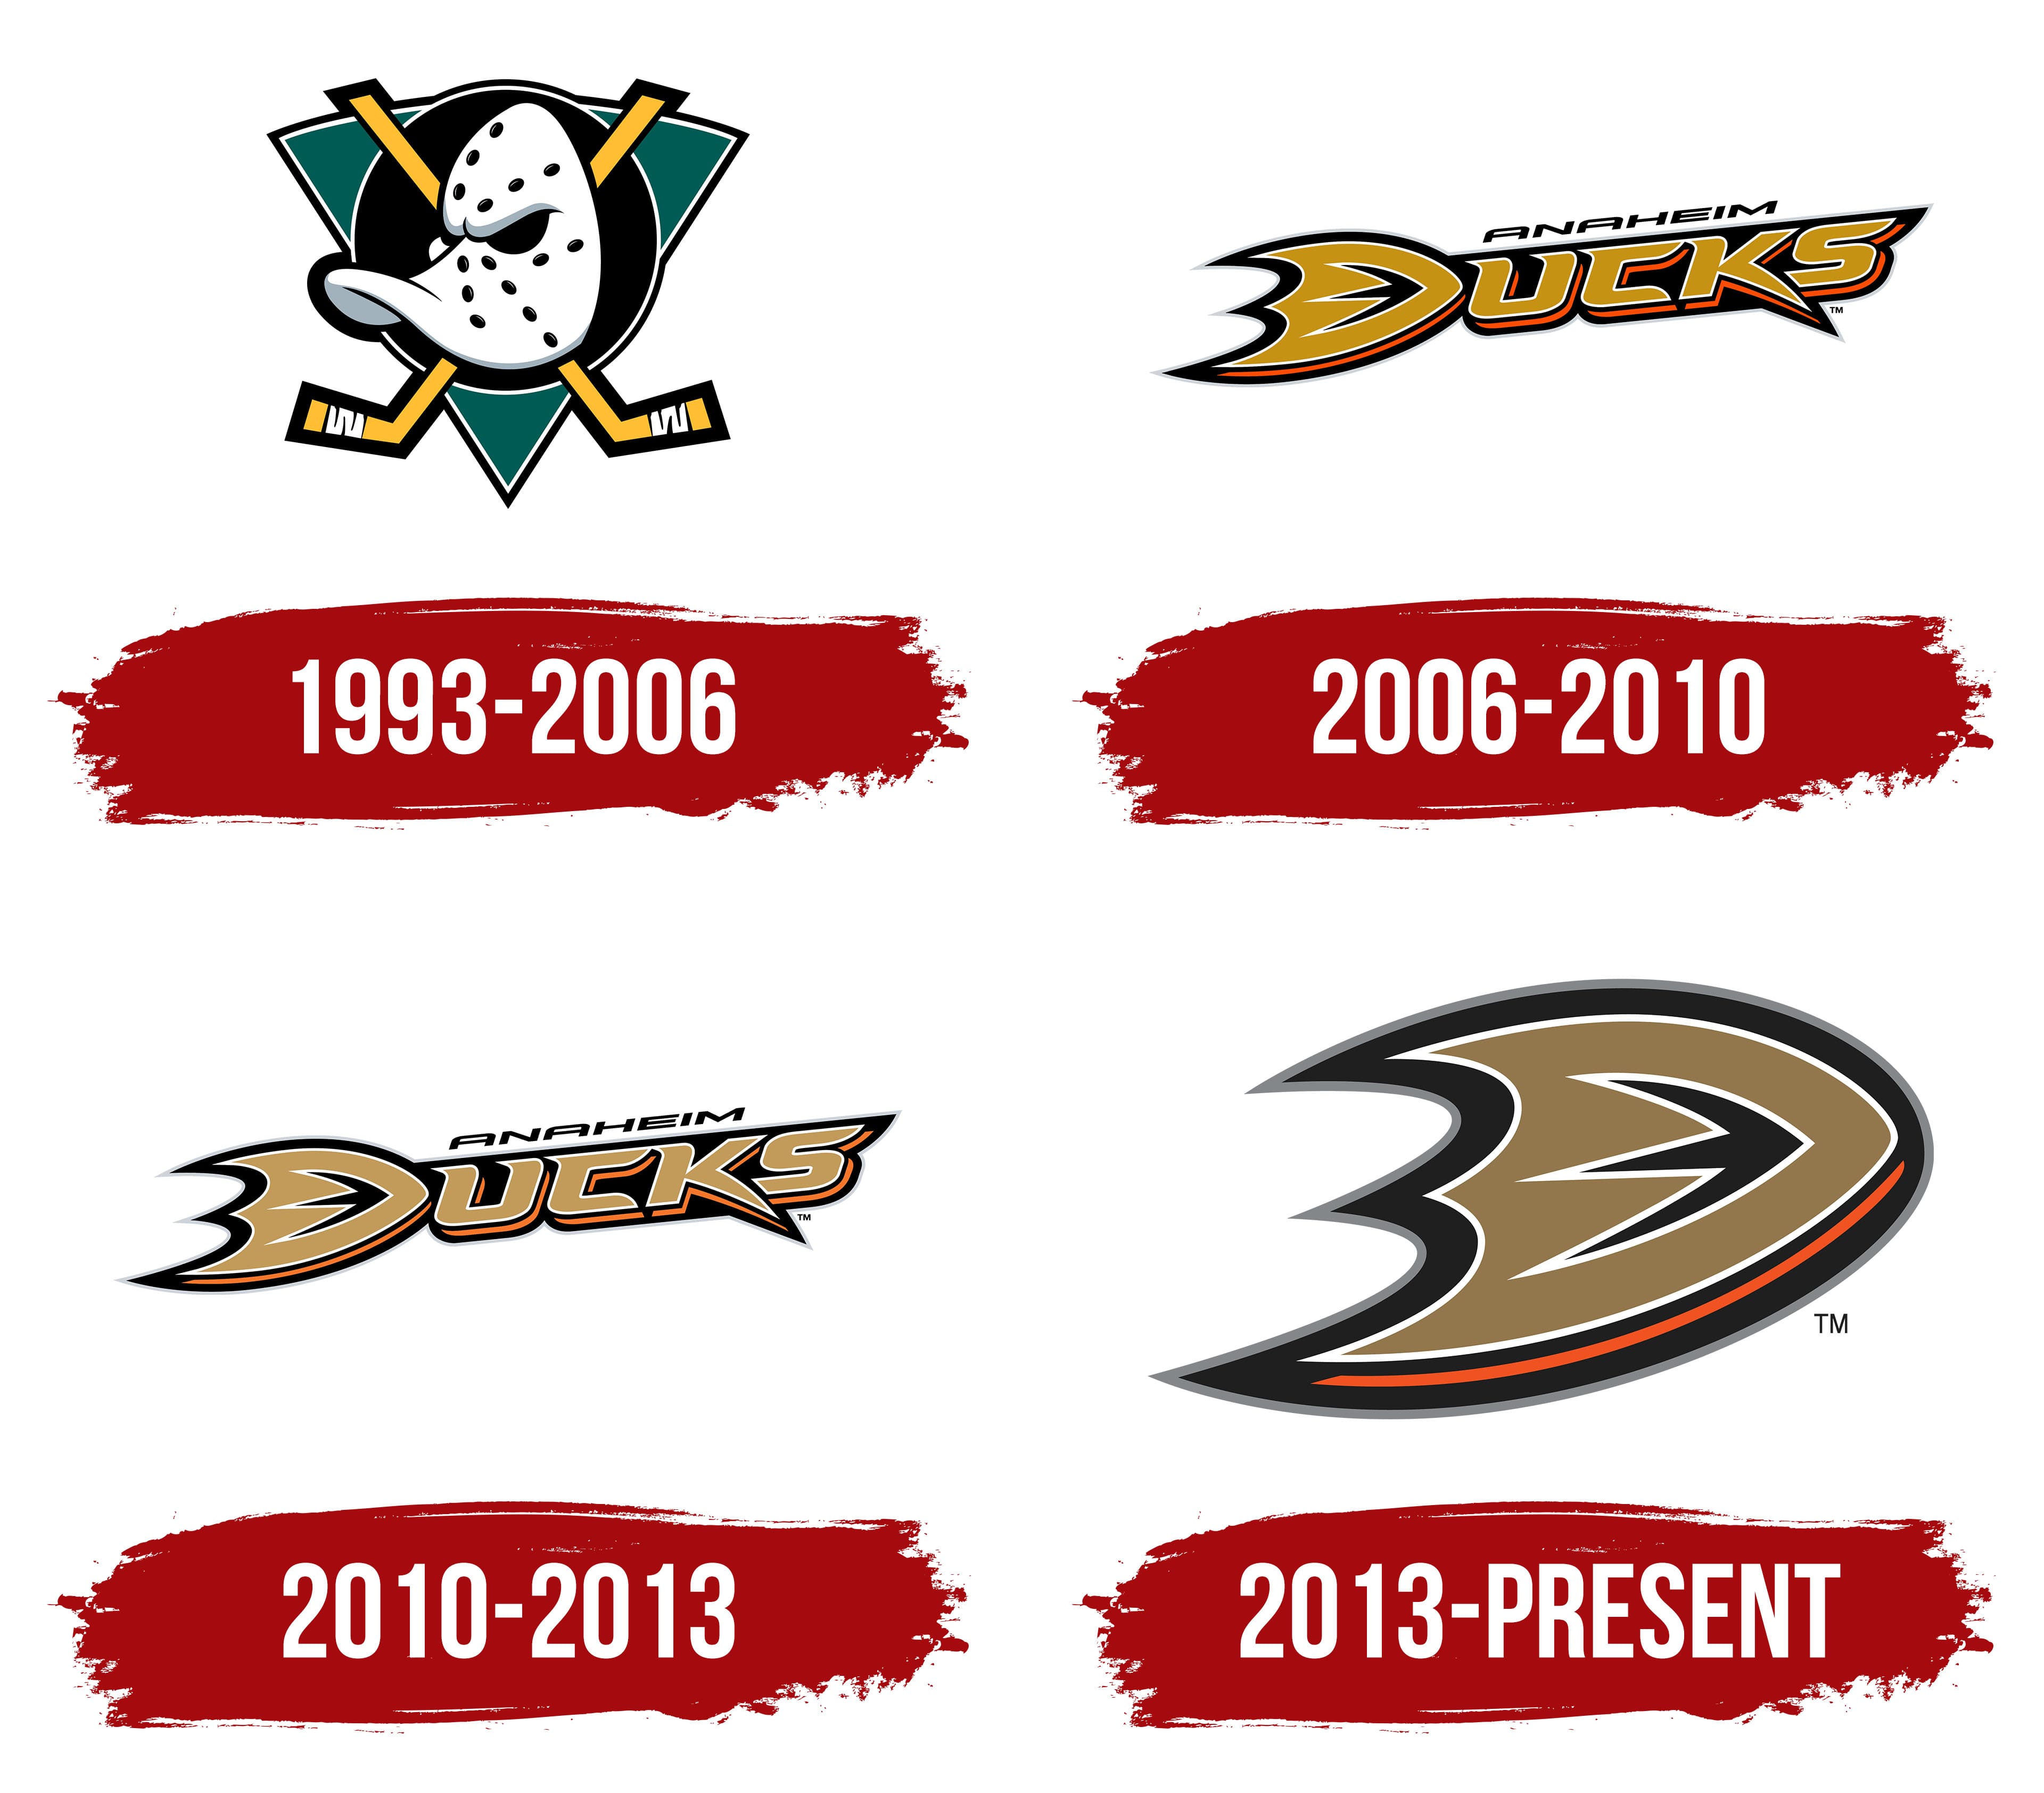 Anaheim Ducks concept  Anaheim ducks, Sports logo, Concept